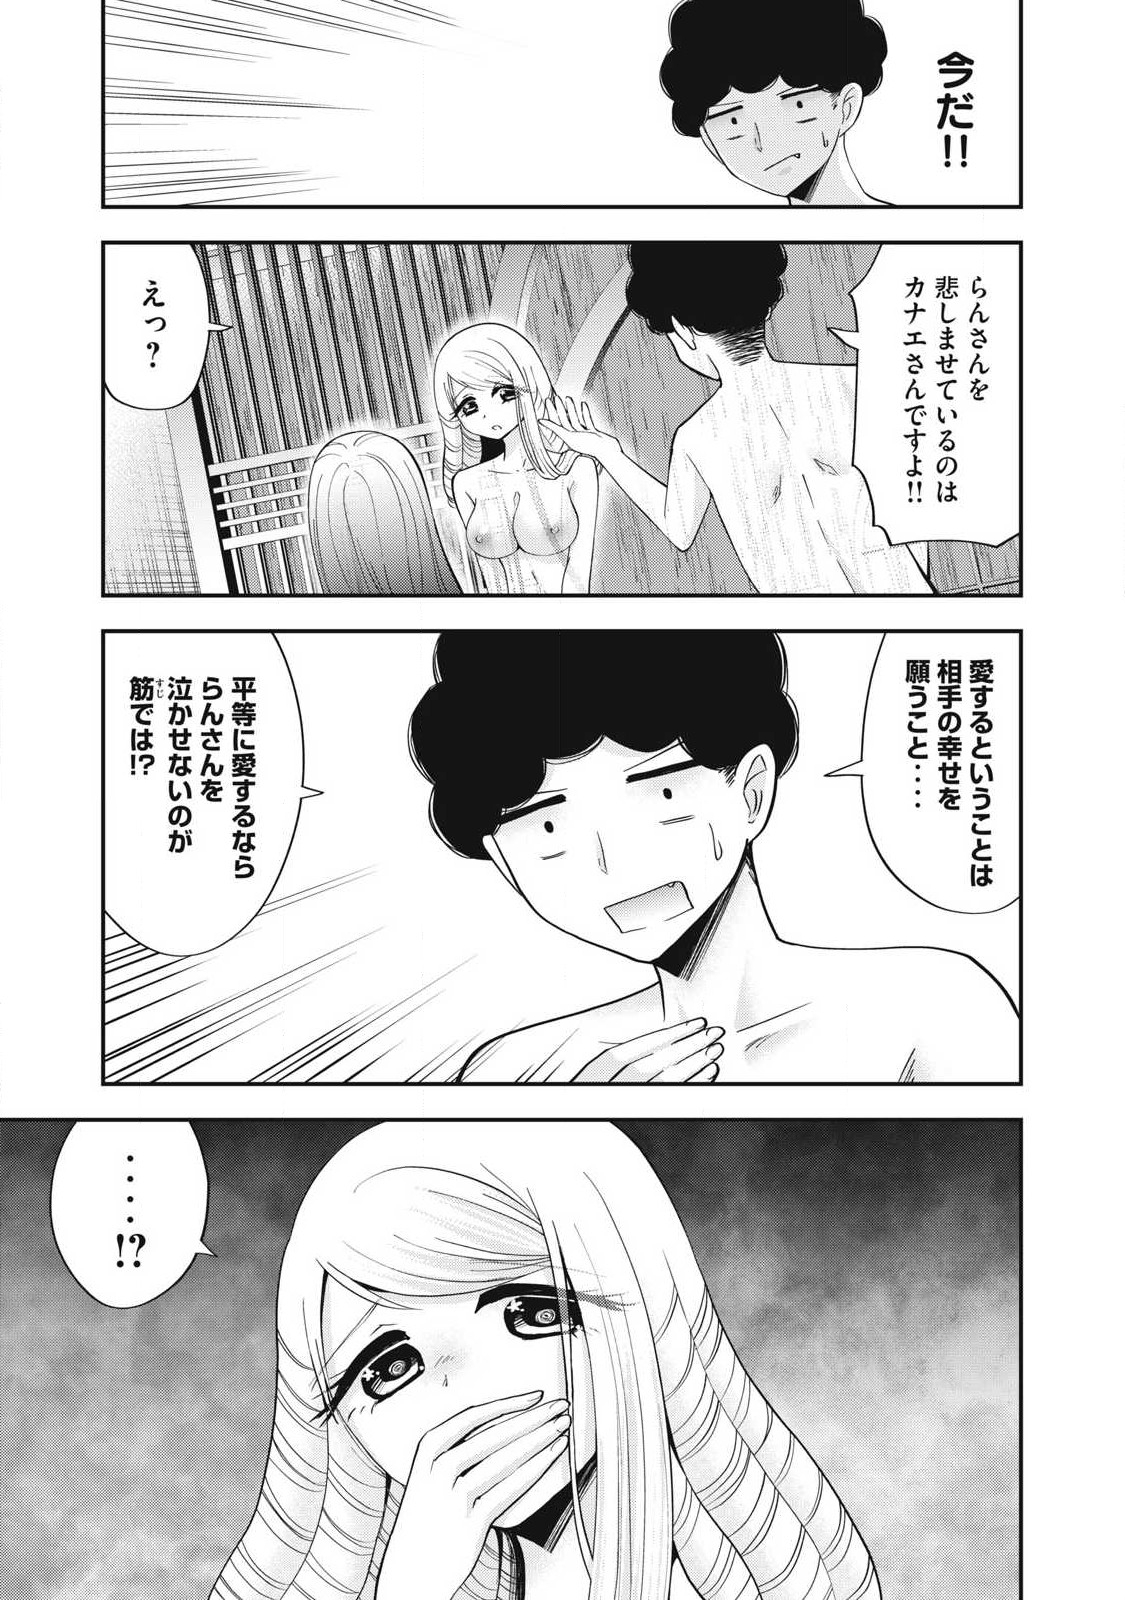 Yumeutsutsu no Hana no Sono - Chapter 14 - Page 3